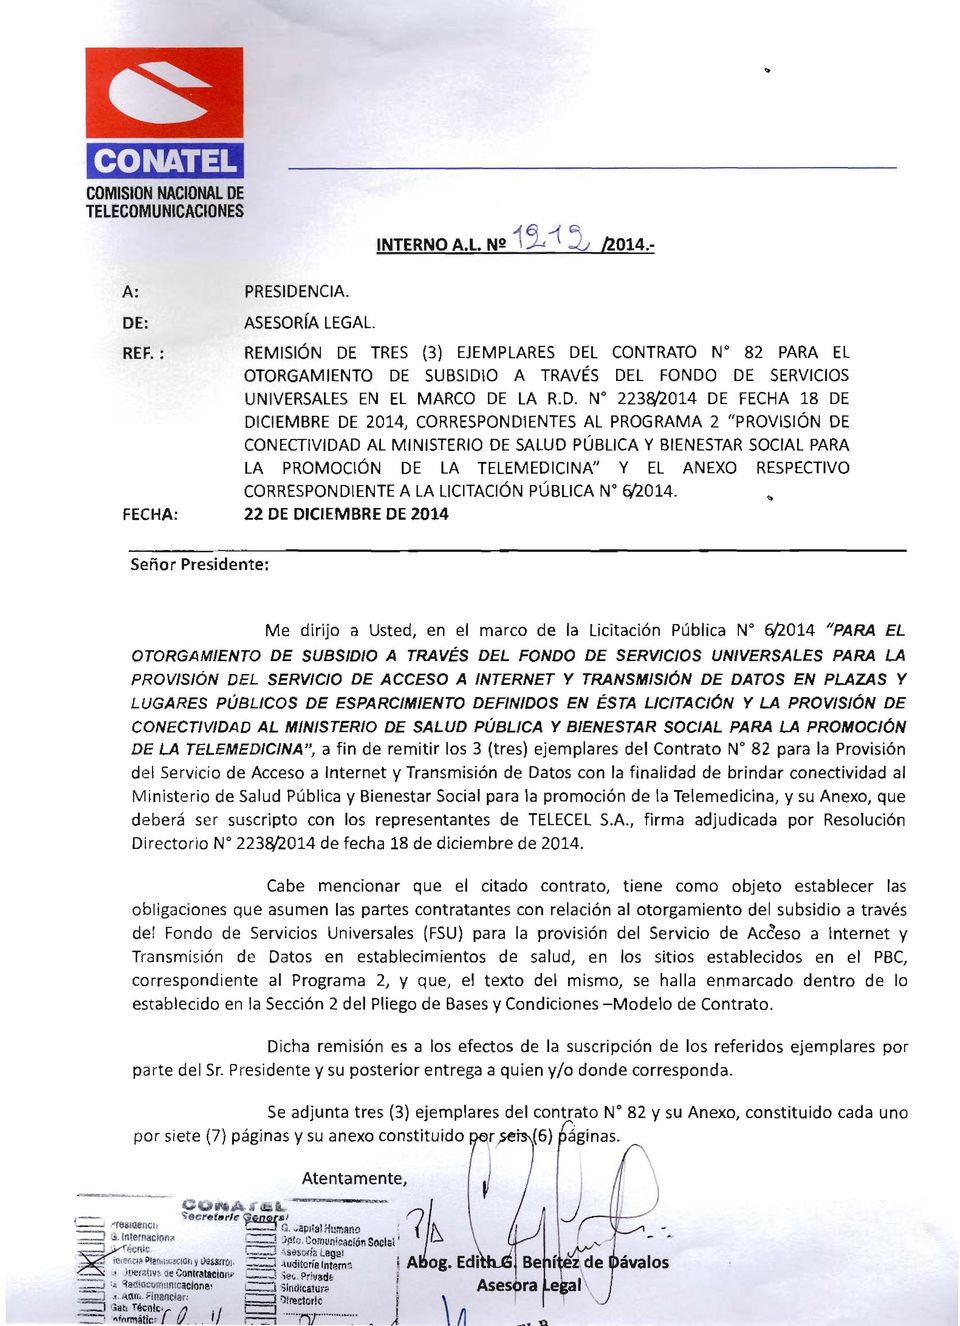 : ASESORíA LEGAL. REF. : REMISiÓN DE